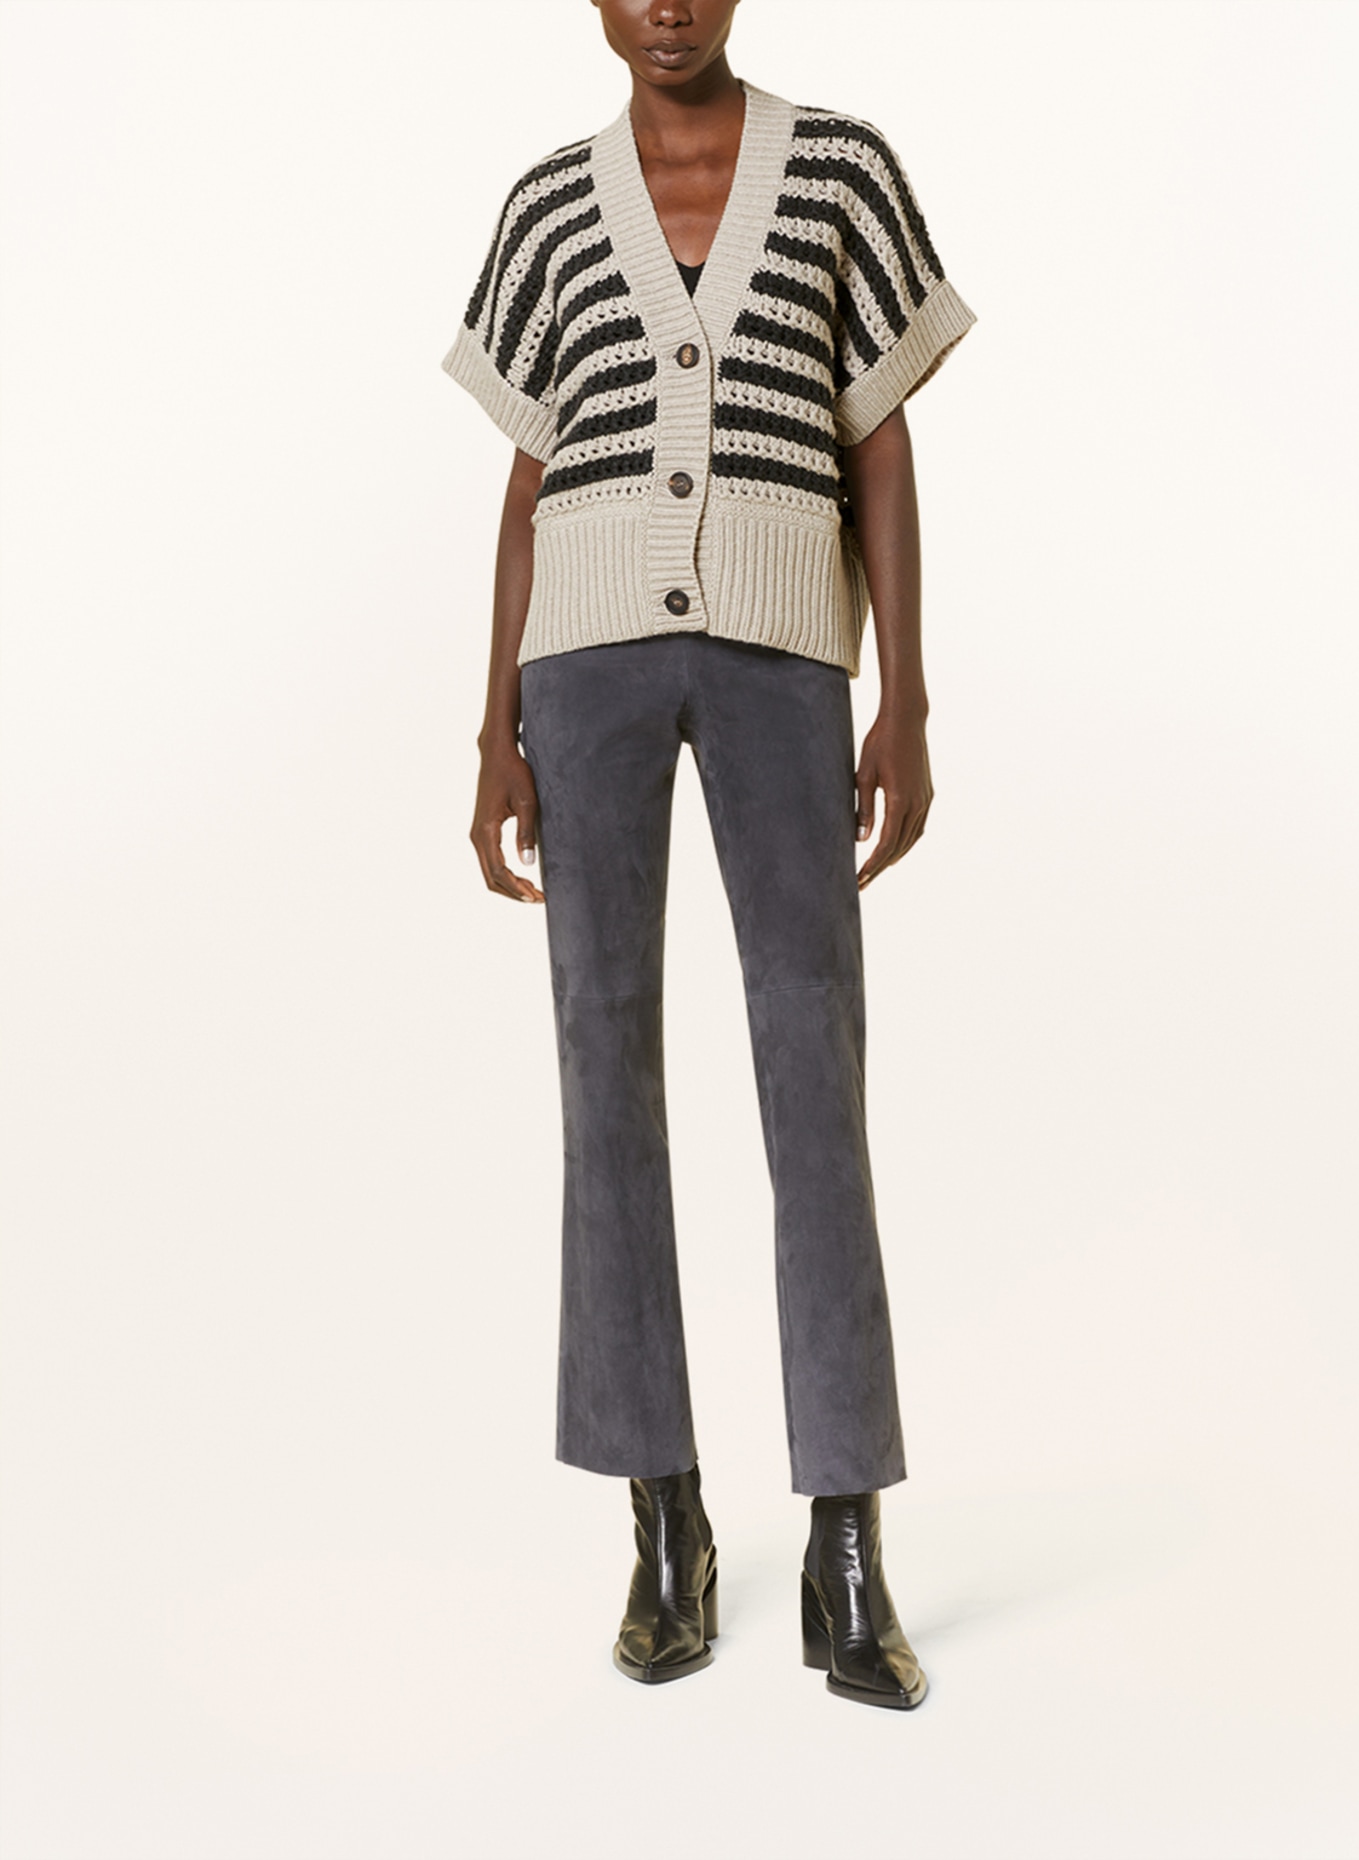 BRUNELLO CUCINELLI Cardigan with cashmere, Color: CREAM/ DARK GRAY (Image 2)